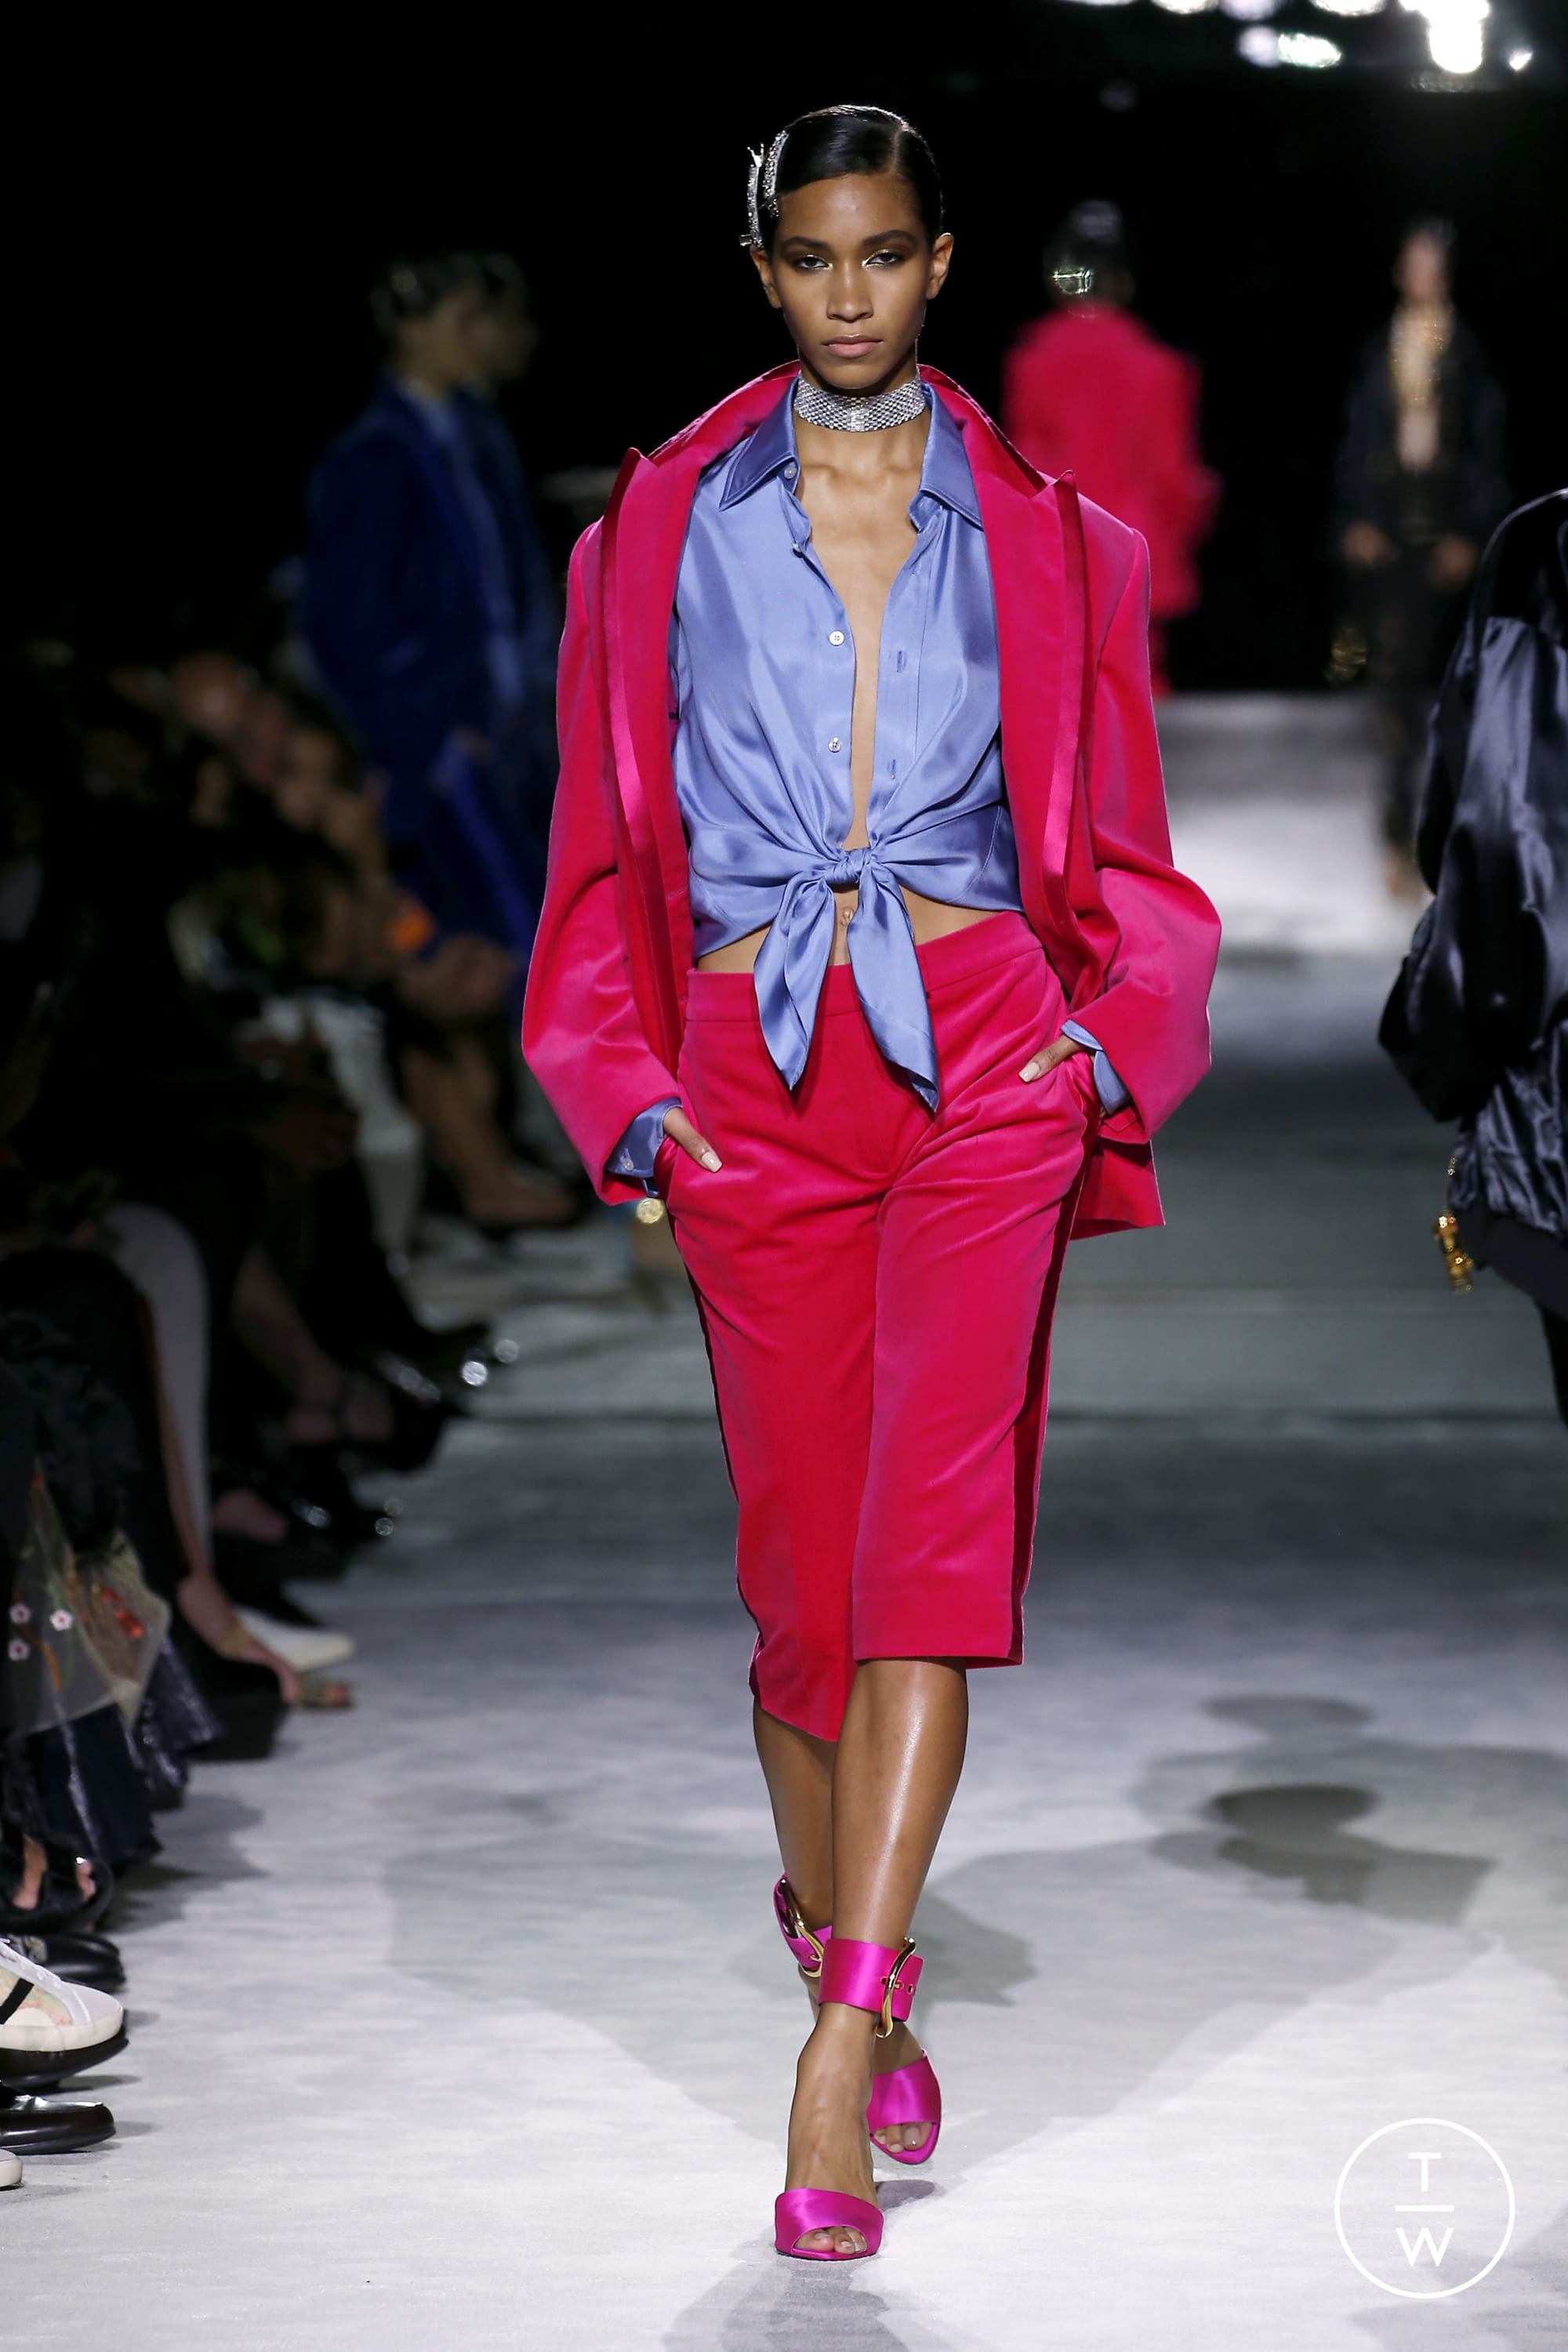 Tom Ford SS22 womenswear #29 - Tagwalk: The Fashion Search Engine